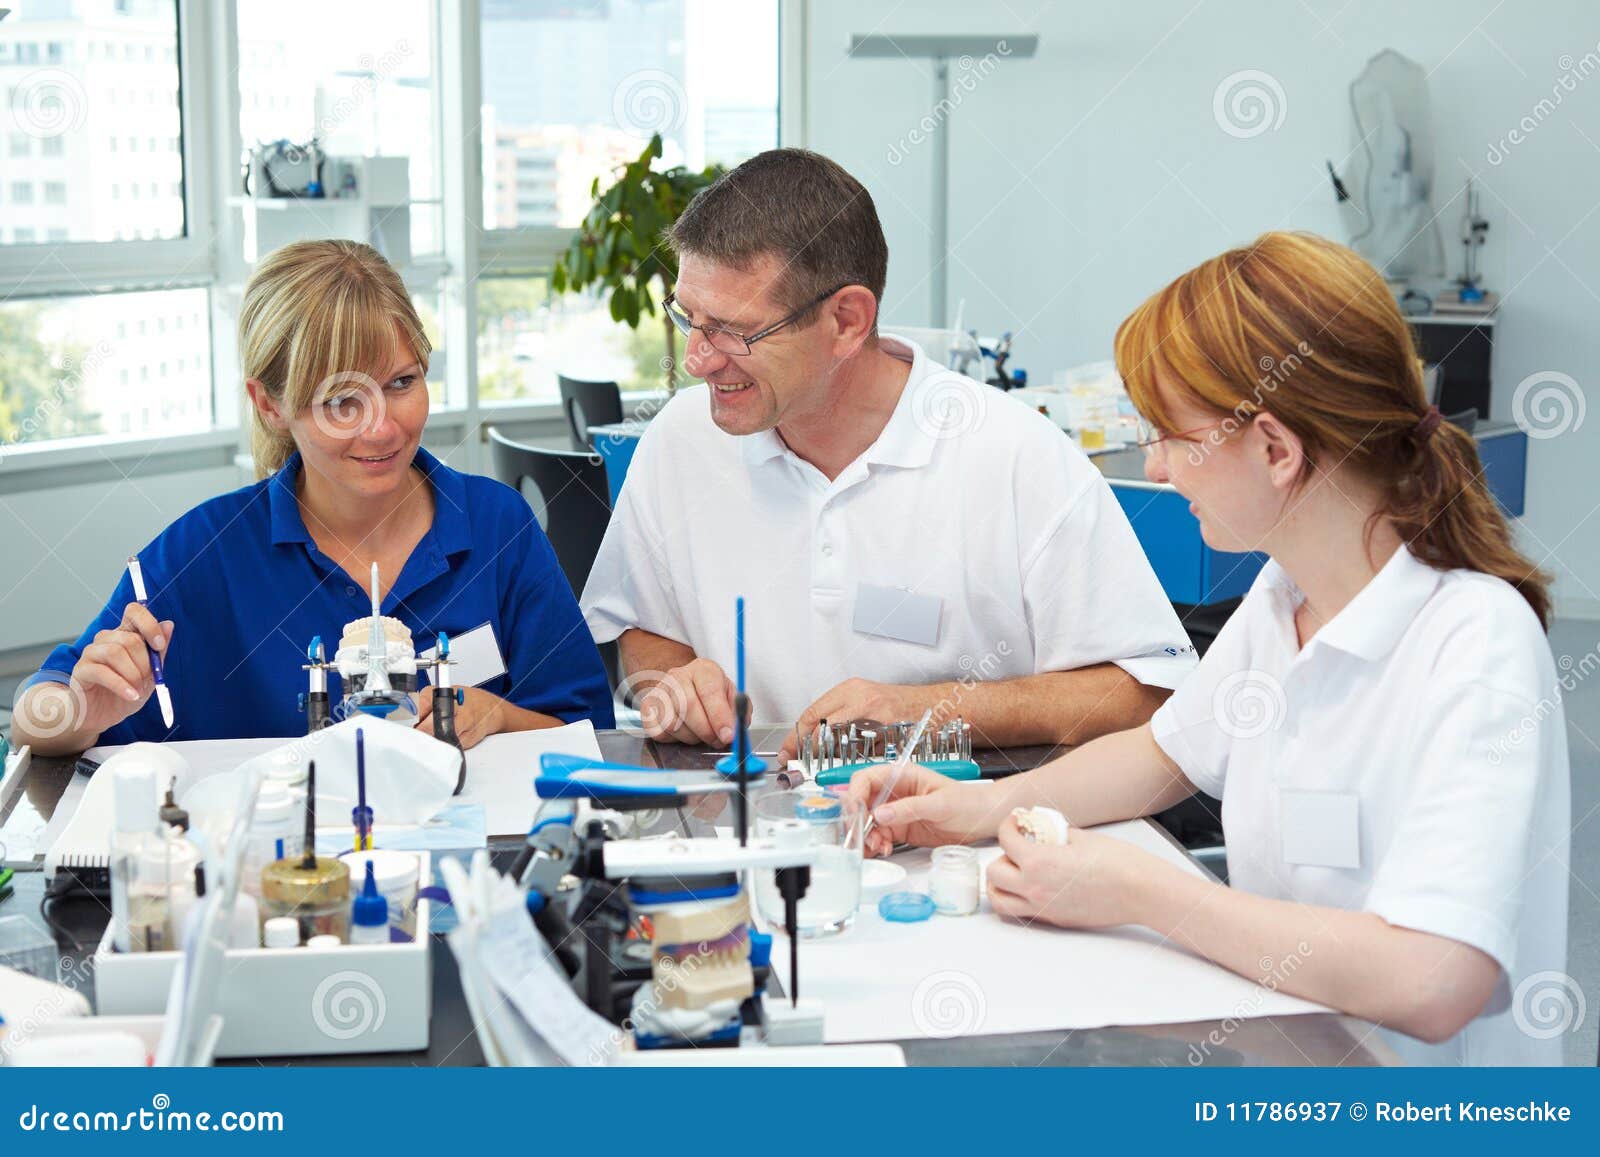 Squadra dentale. Tre tecnici dentali che lavorano in un laboratorio dentale